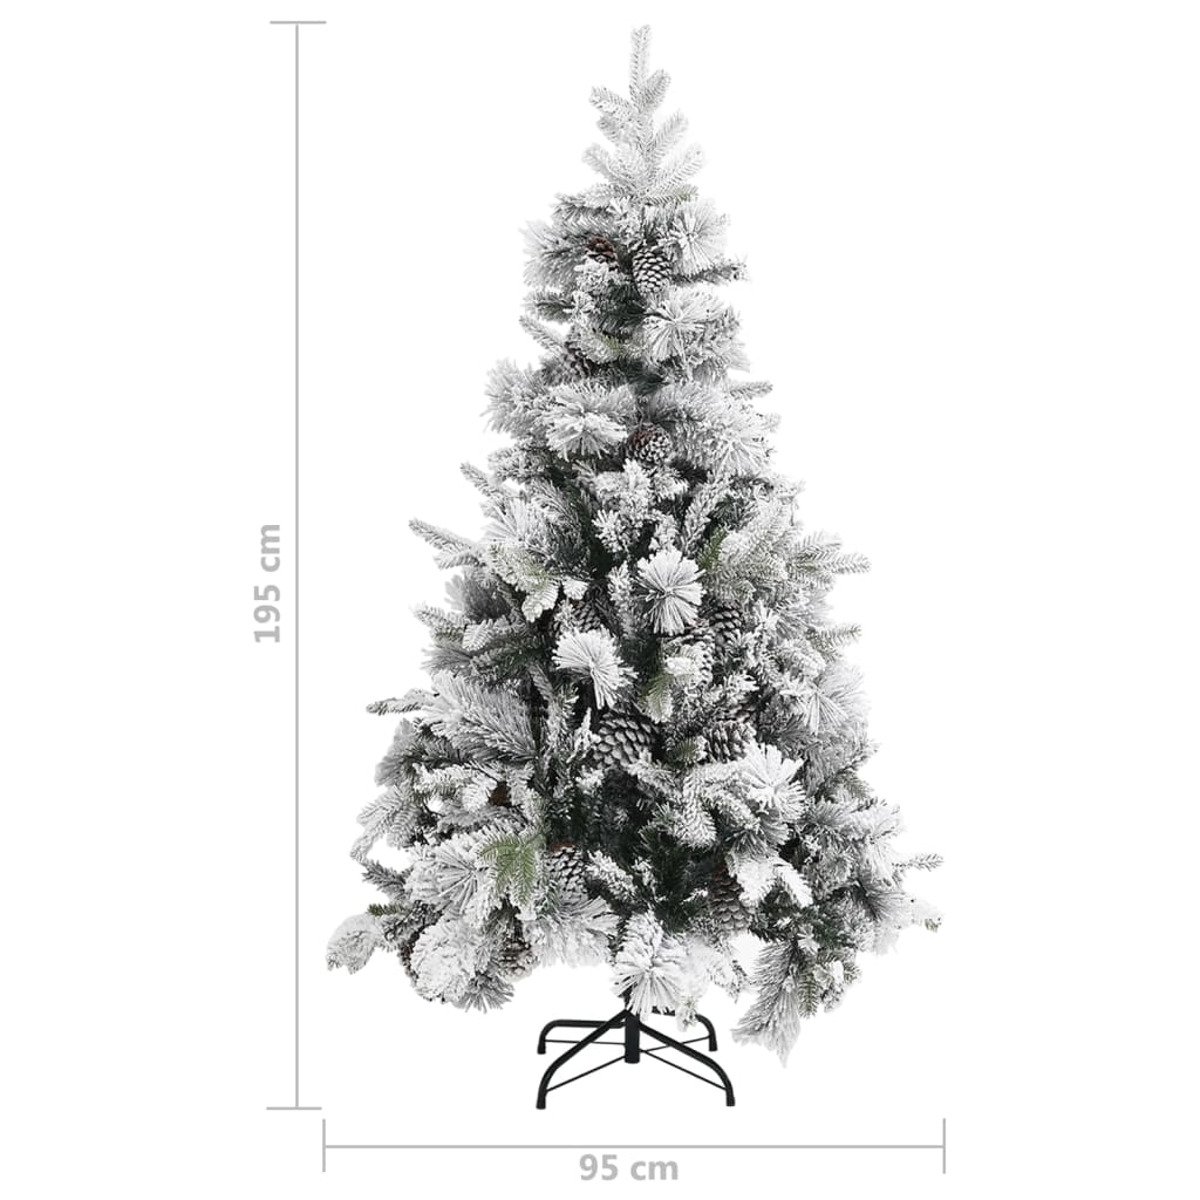 VIDAXL 340531 Weihnachtsbaum